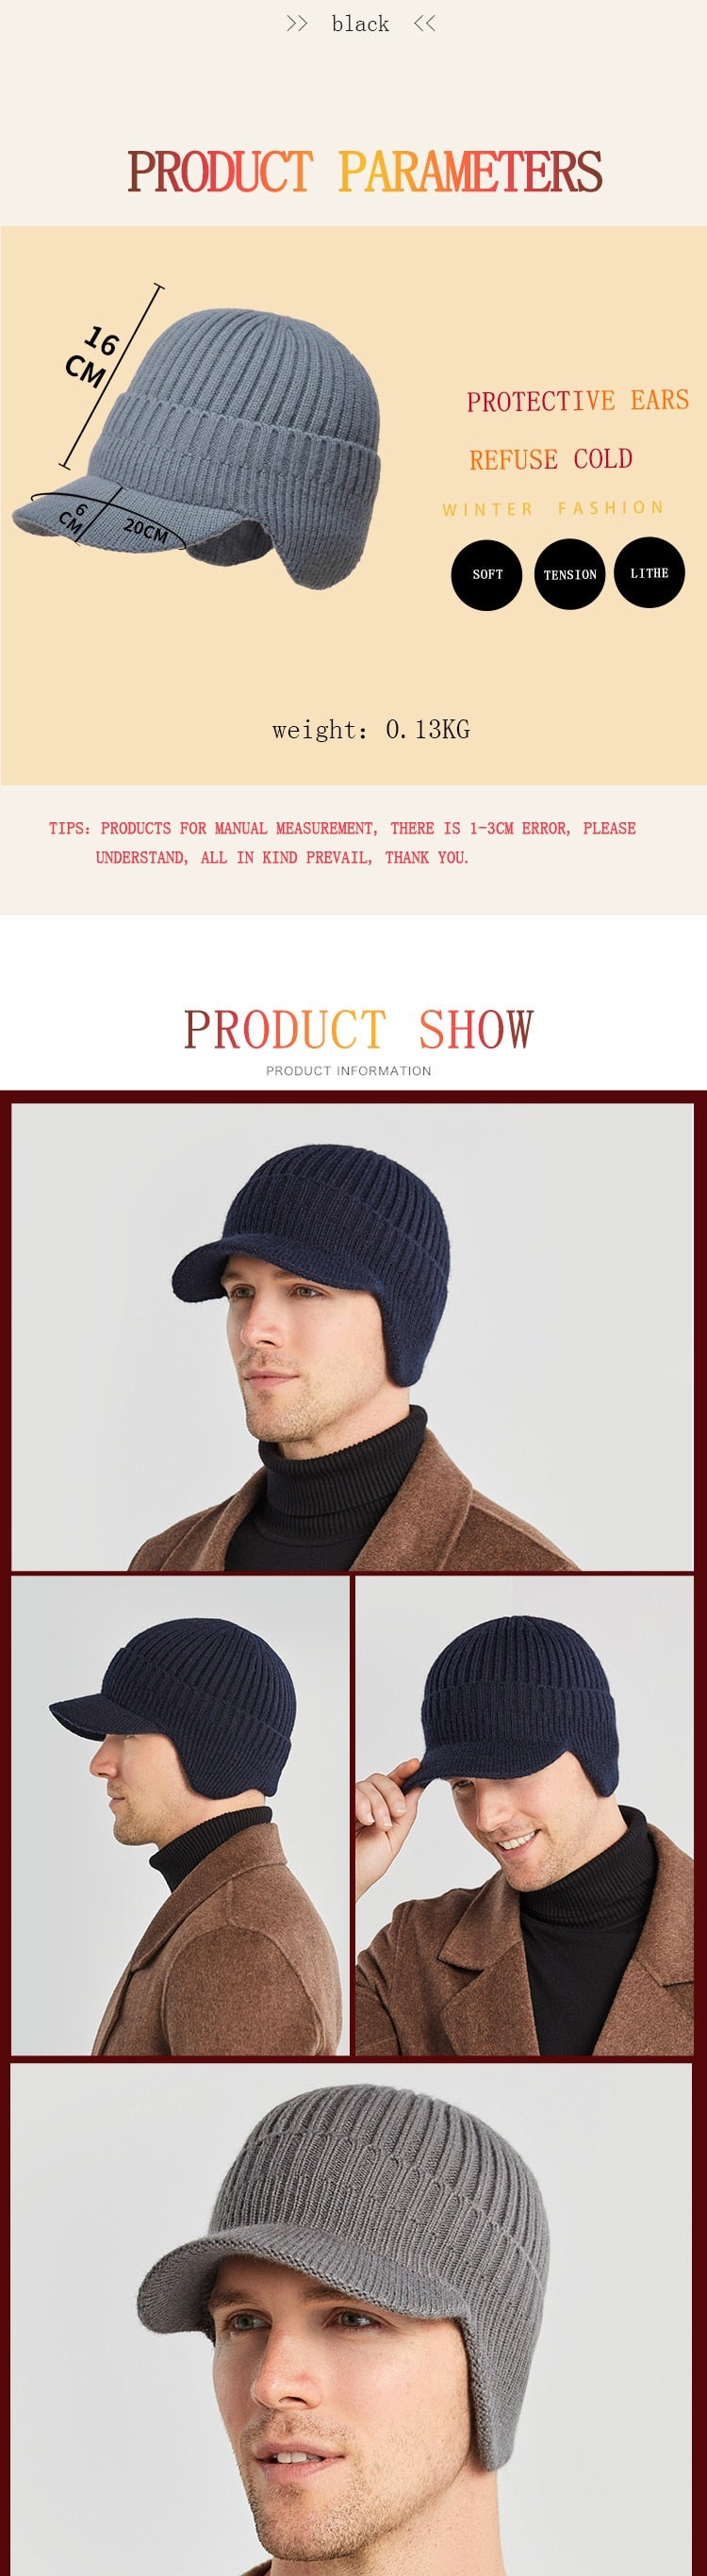 men's knit winter hat kw